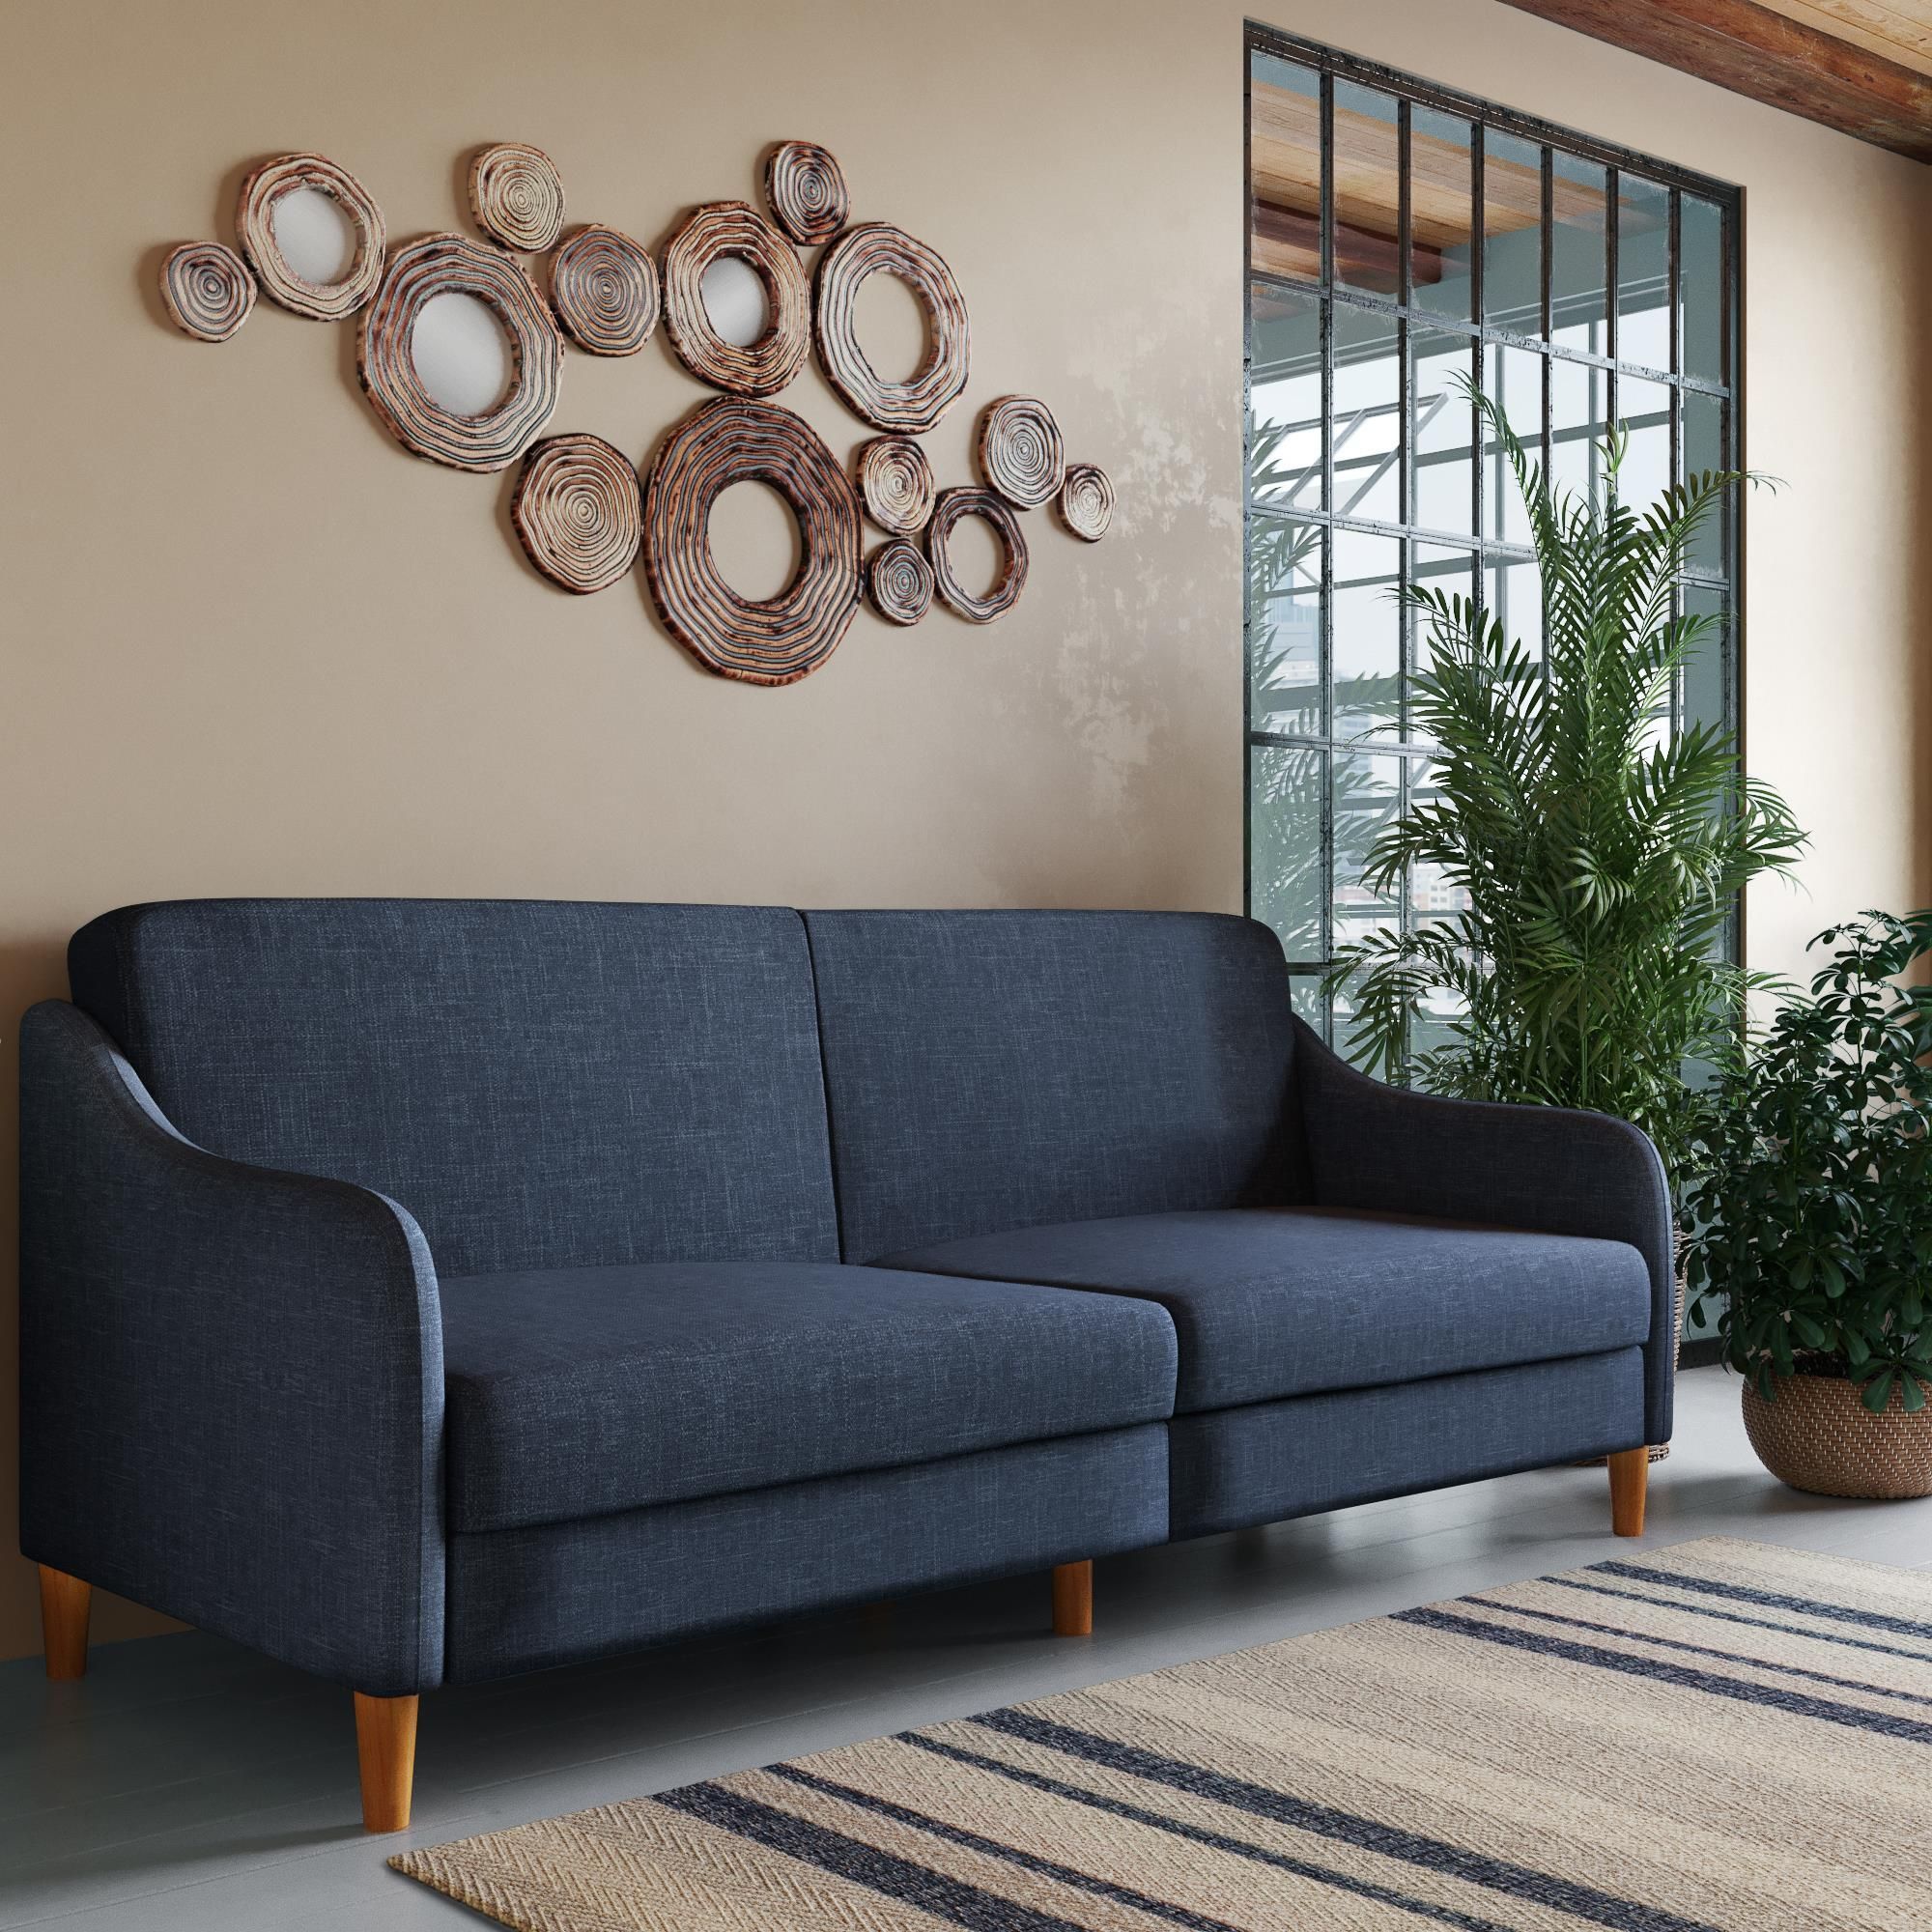 Desert Fields Jasper Coil Futon, Navy Linen – Walmart | Living Room Intended For Navy Linen Coil Sofas (View 7 of 20)